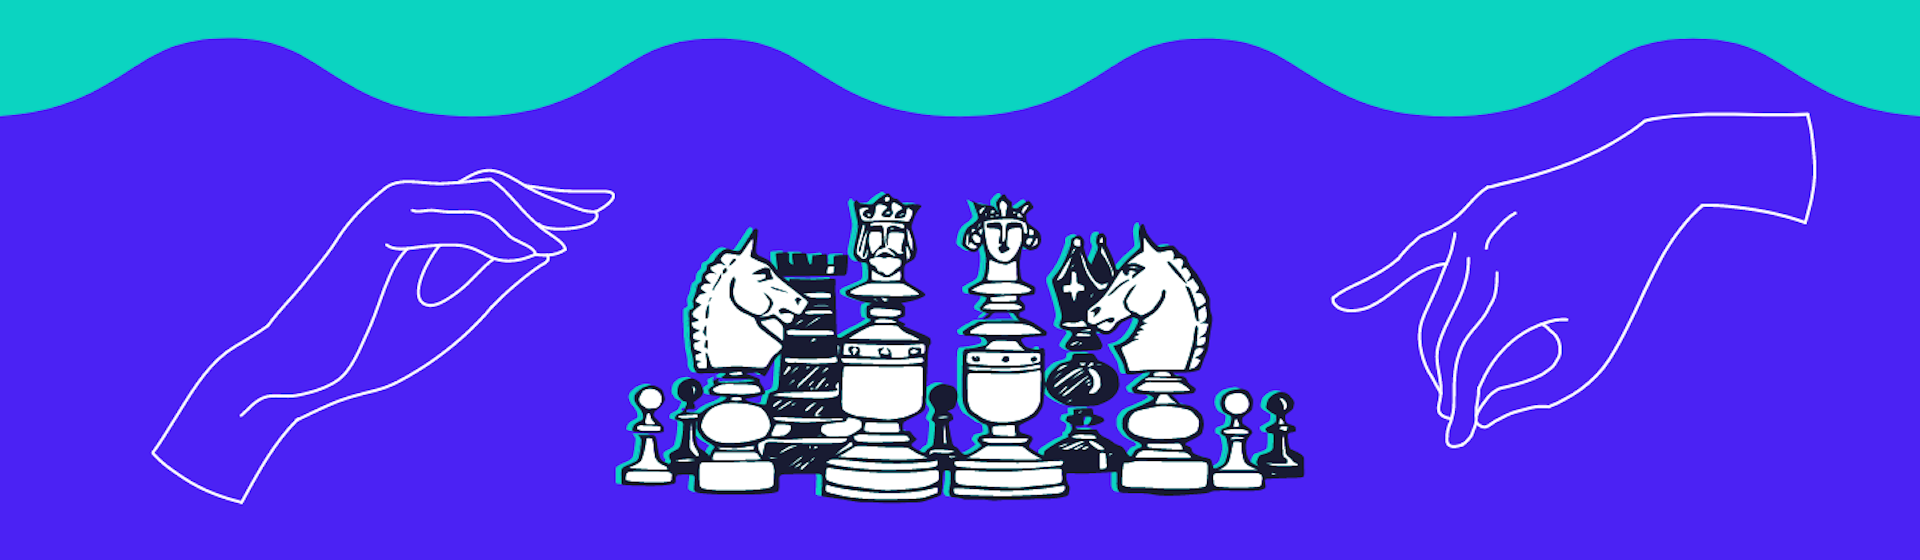 ¿Qué es el ajedrez? El arte de la estrategia y la guerra